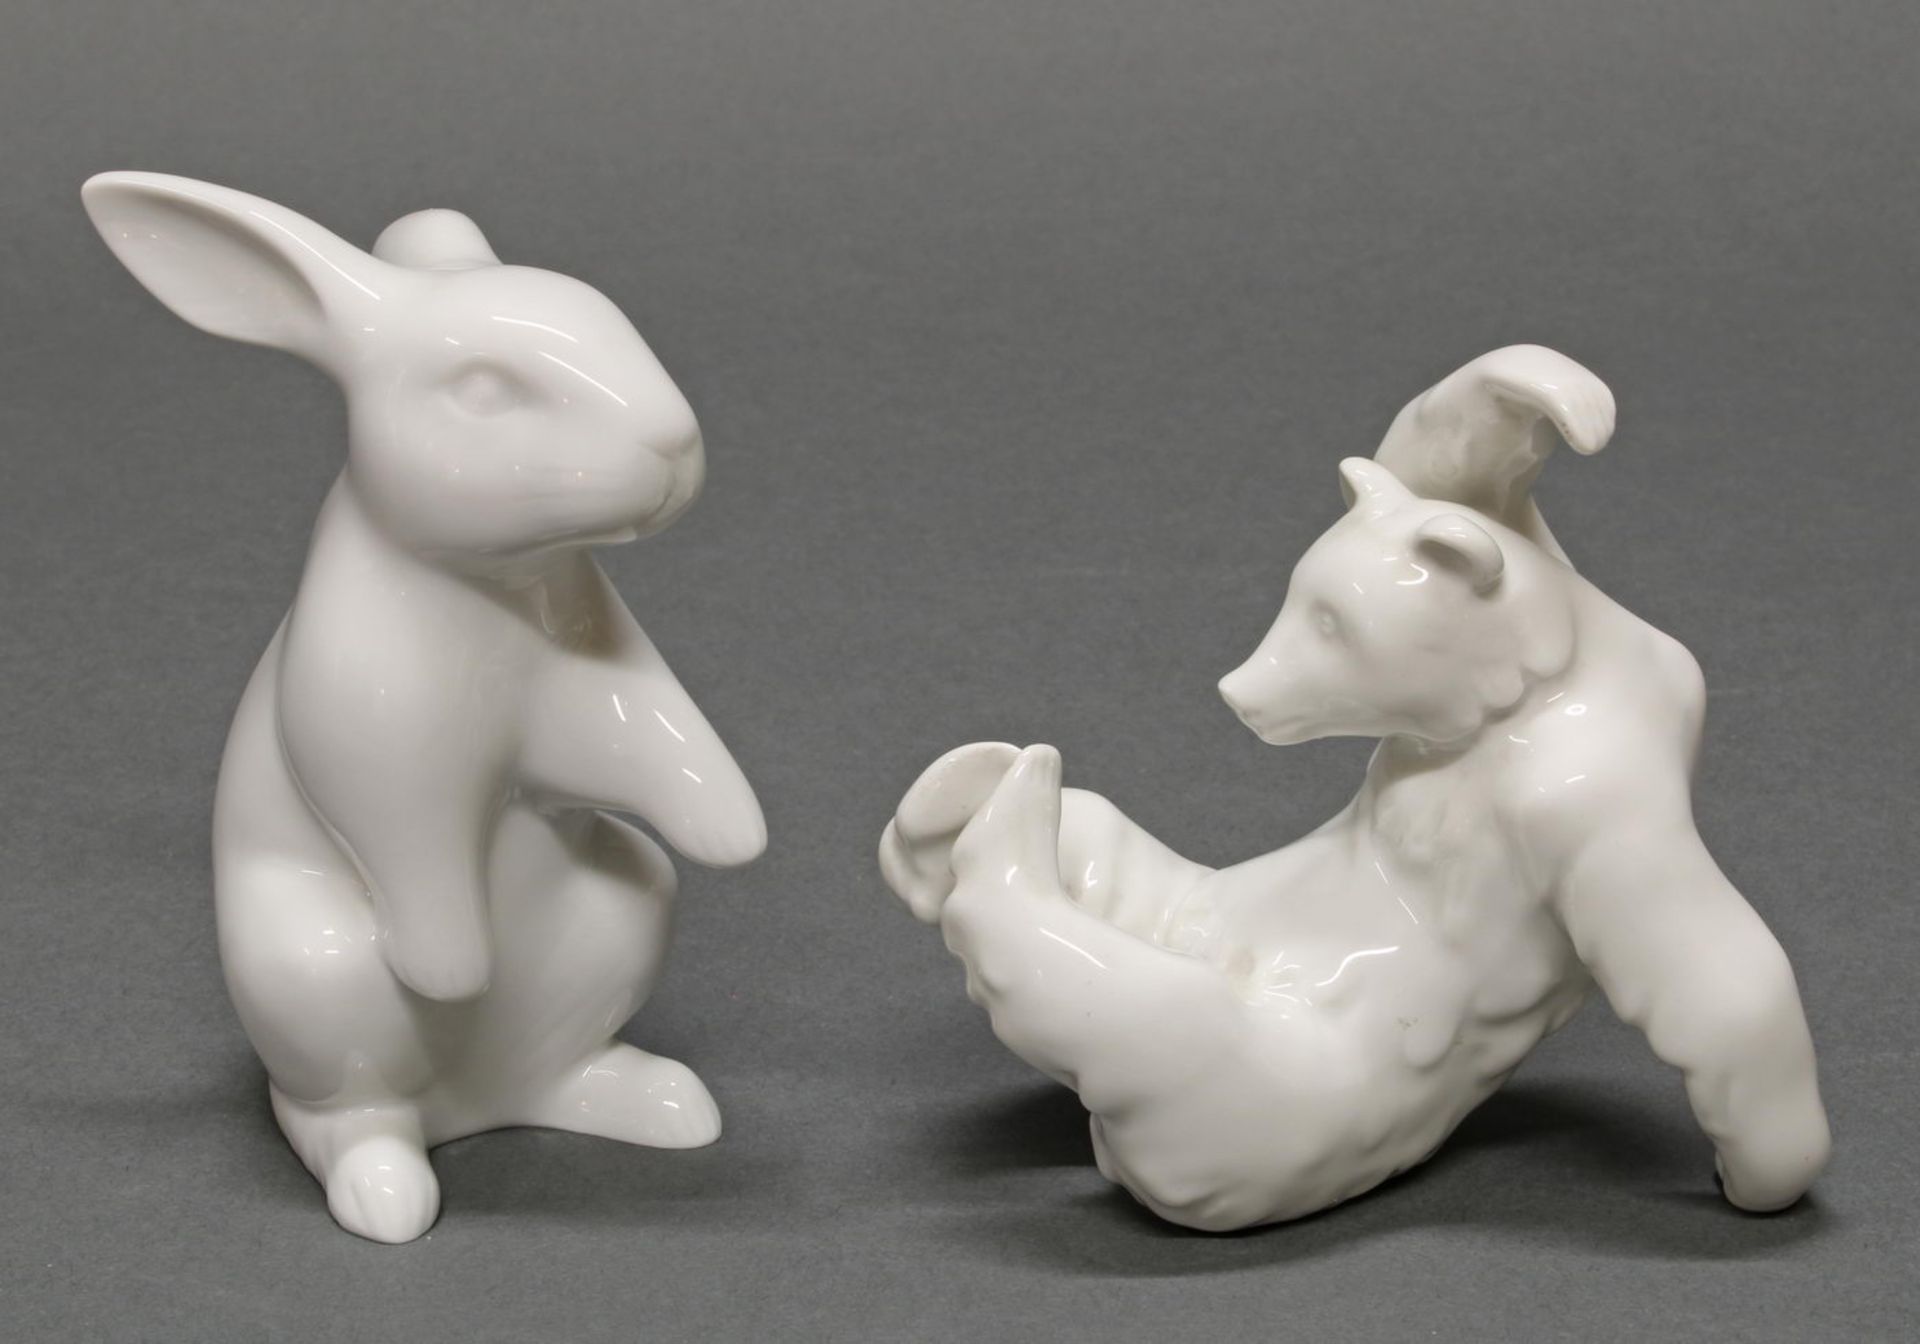 2 Porzellanfiguren, "Bär", "Hase", KPM Berlin, Weißporzellan, 10-11.5 cm hoch